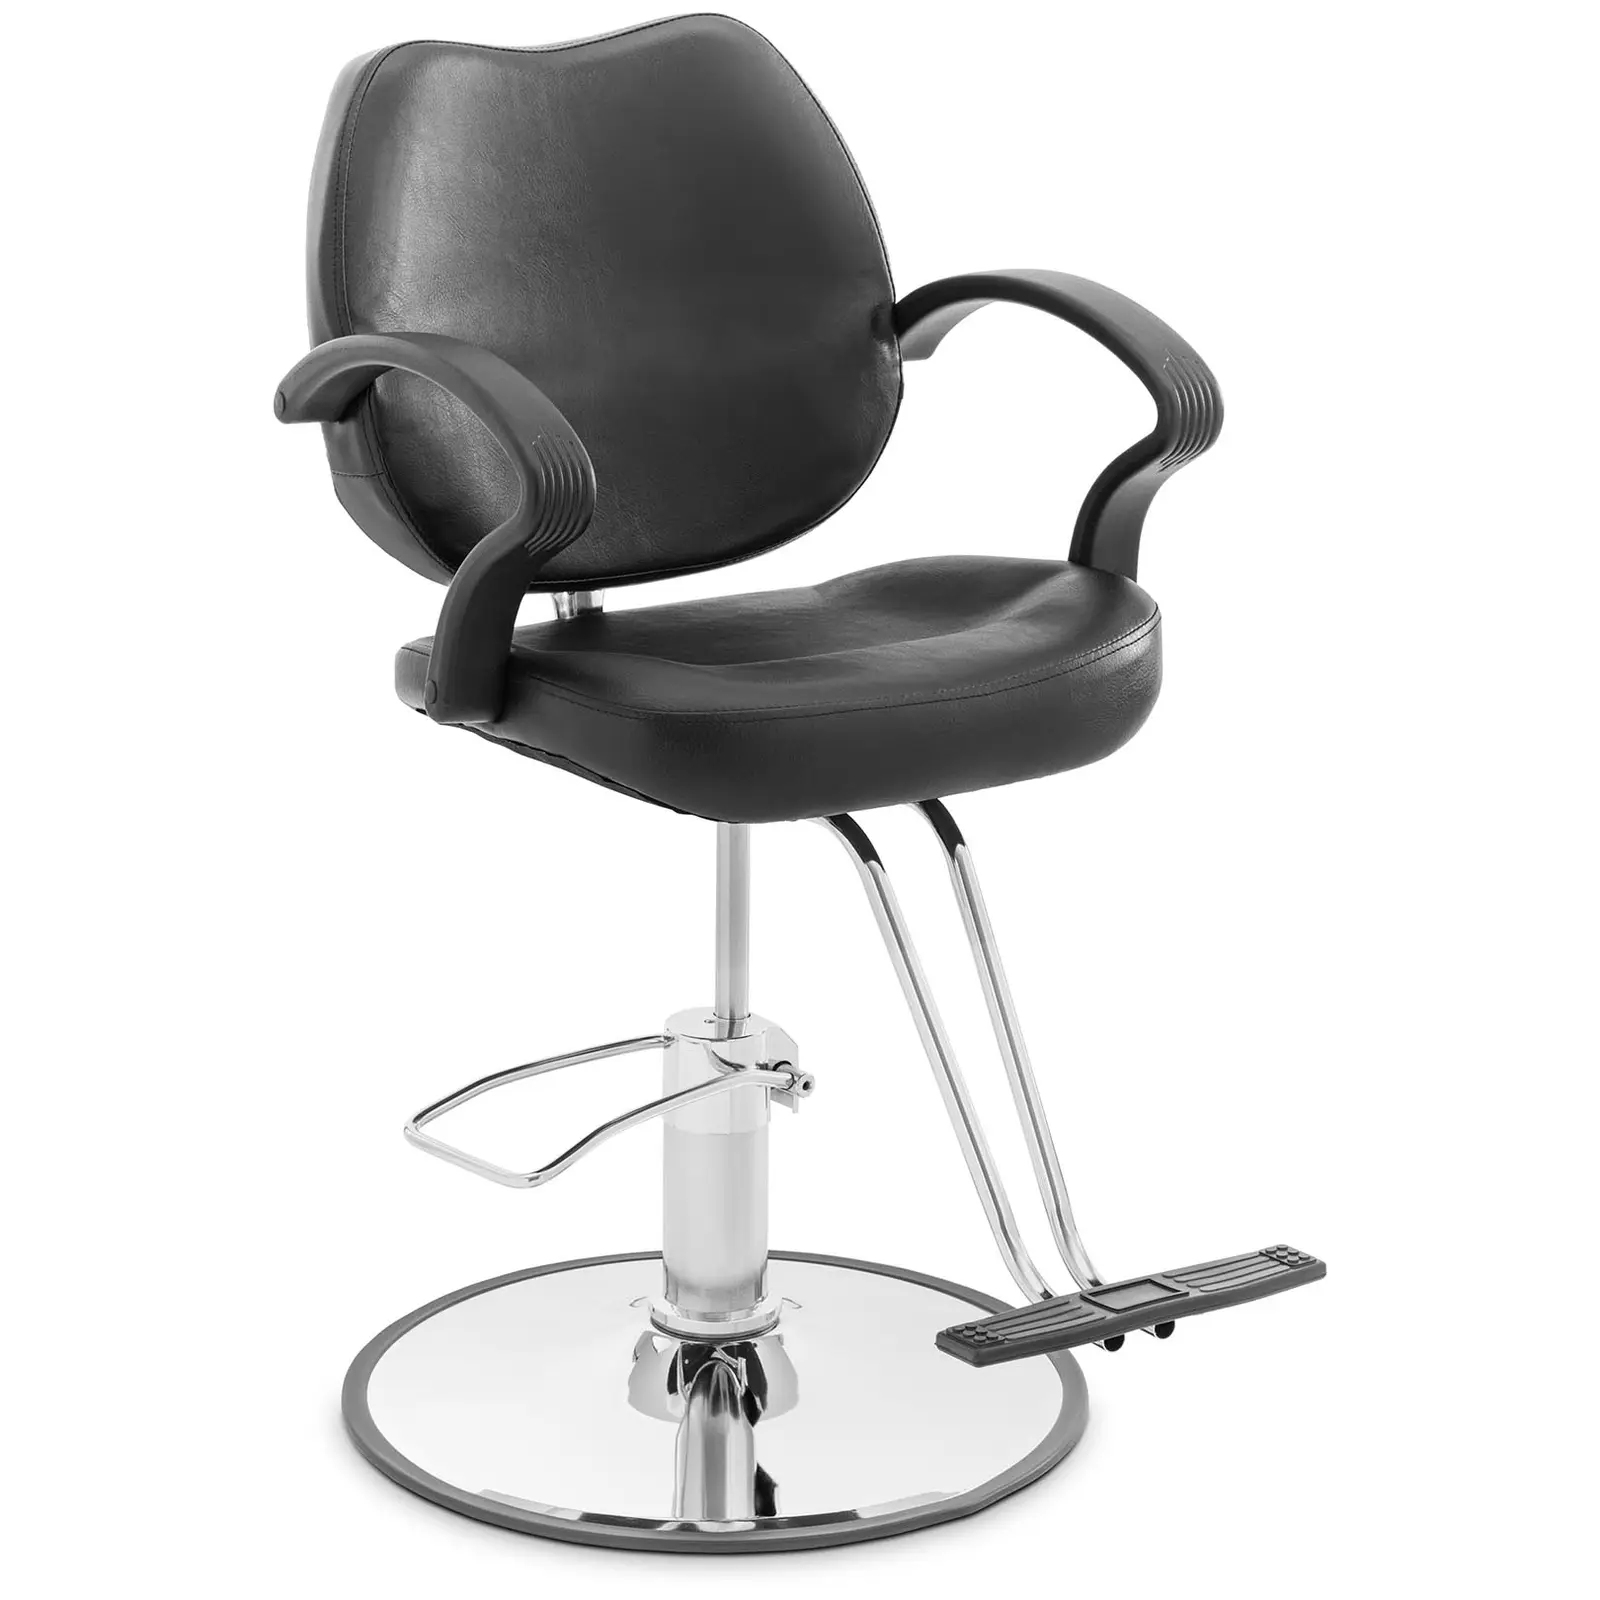 Grožio salono kėdė - T formos kojų atrama - 53 - 64 cm - 160 kg - juoda